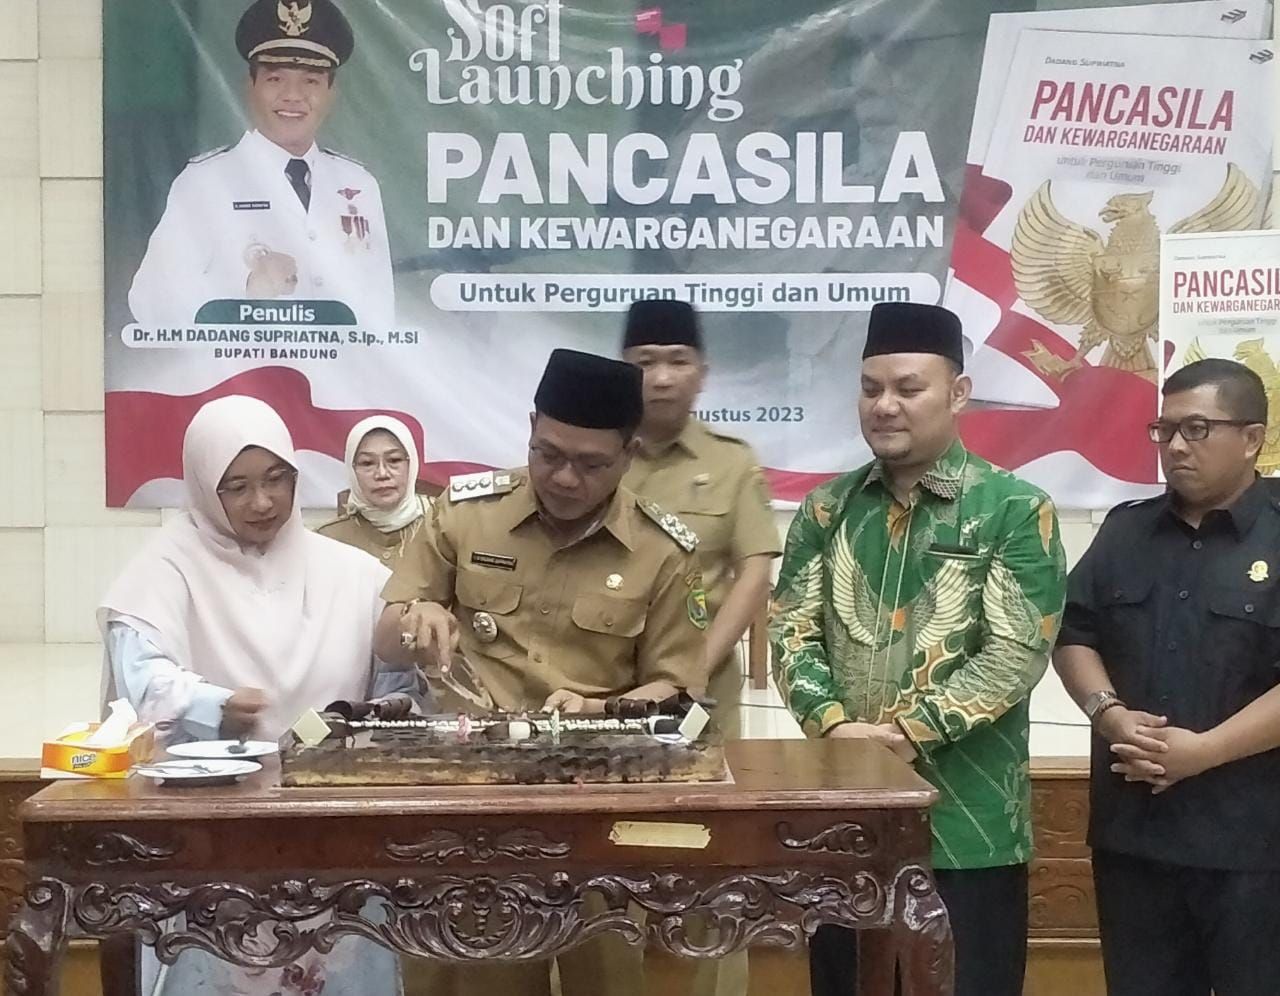 Proses pemotongan kue ulang tahun Bupati Bandung Dadang Supriatna ditemani sang istri Emma Dety Permanawati, hari ini Senin 7 Juli 2023./ Feby Syarifah - GalamediaNews